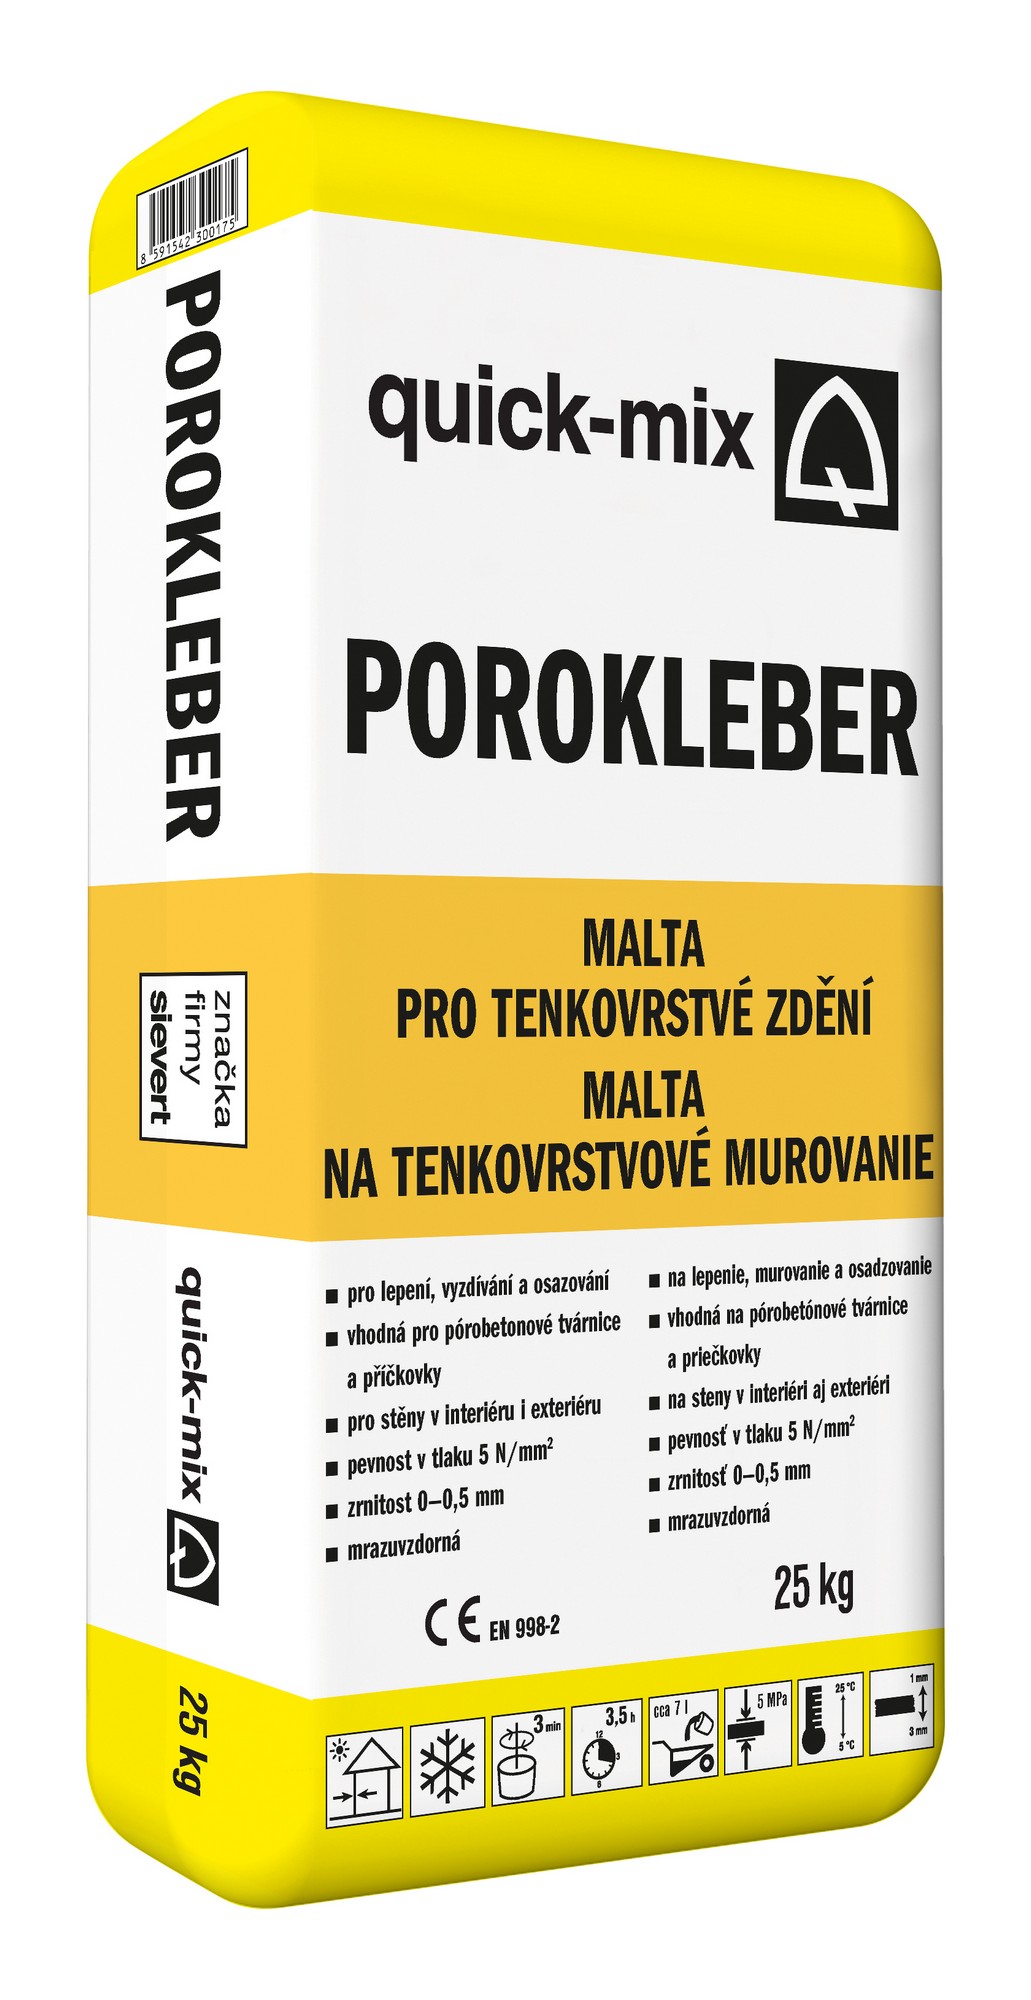 Malta zdicí pro tenké spáry Sakret/Quick-mix Porokleber 25 kg